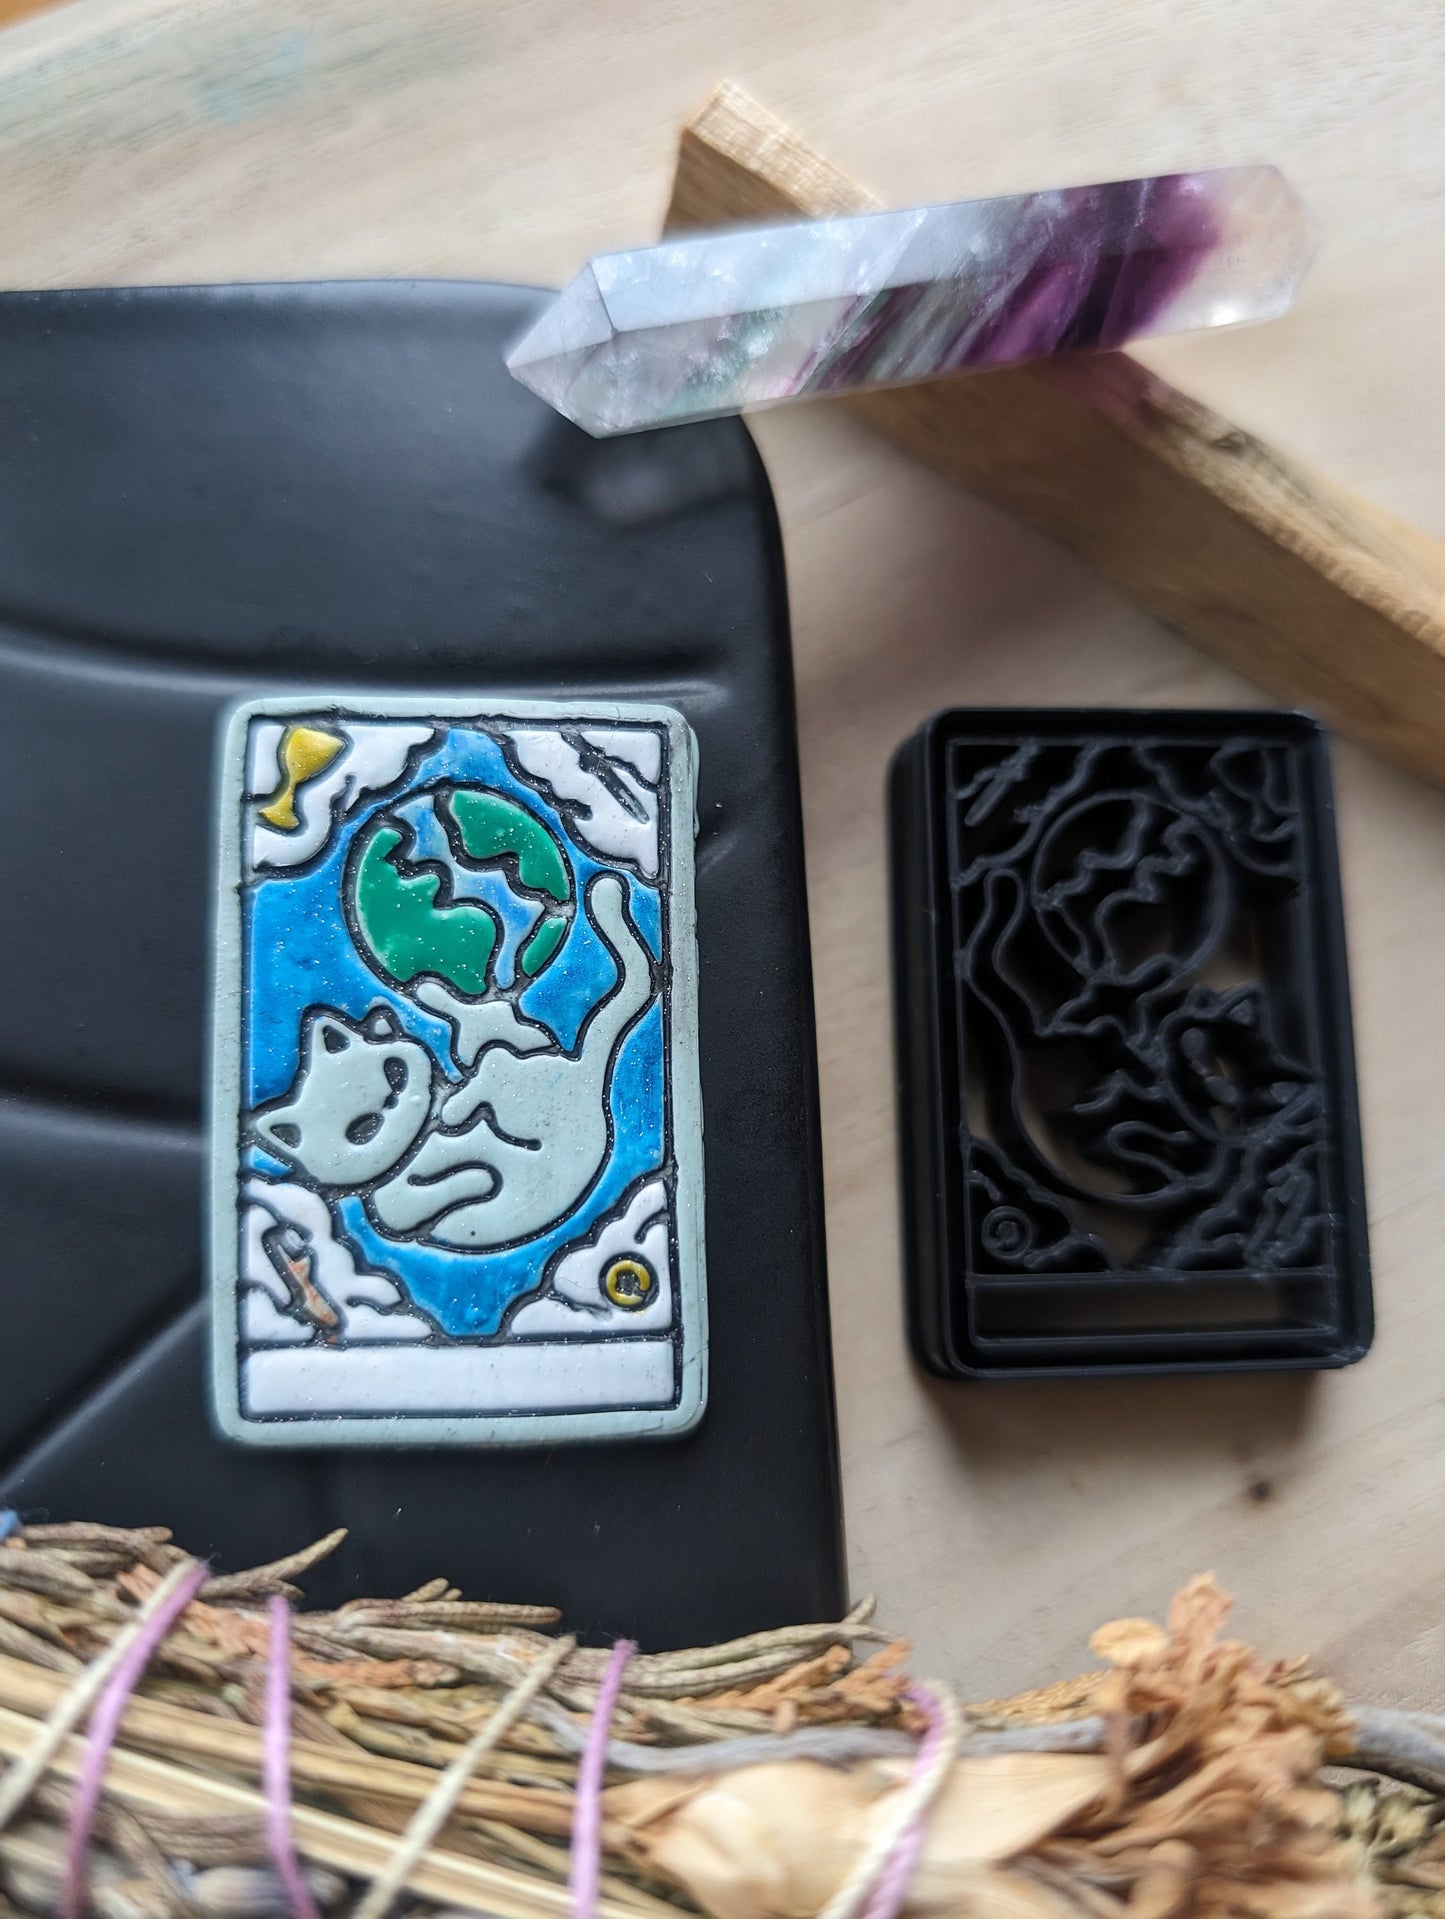 The World Cat Themed Tarot Card Sharp Clay Cutter